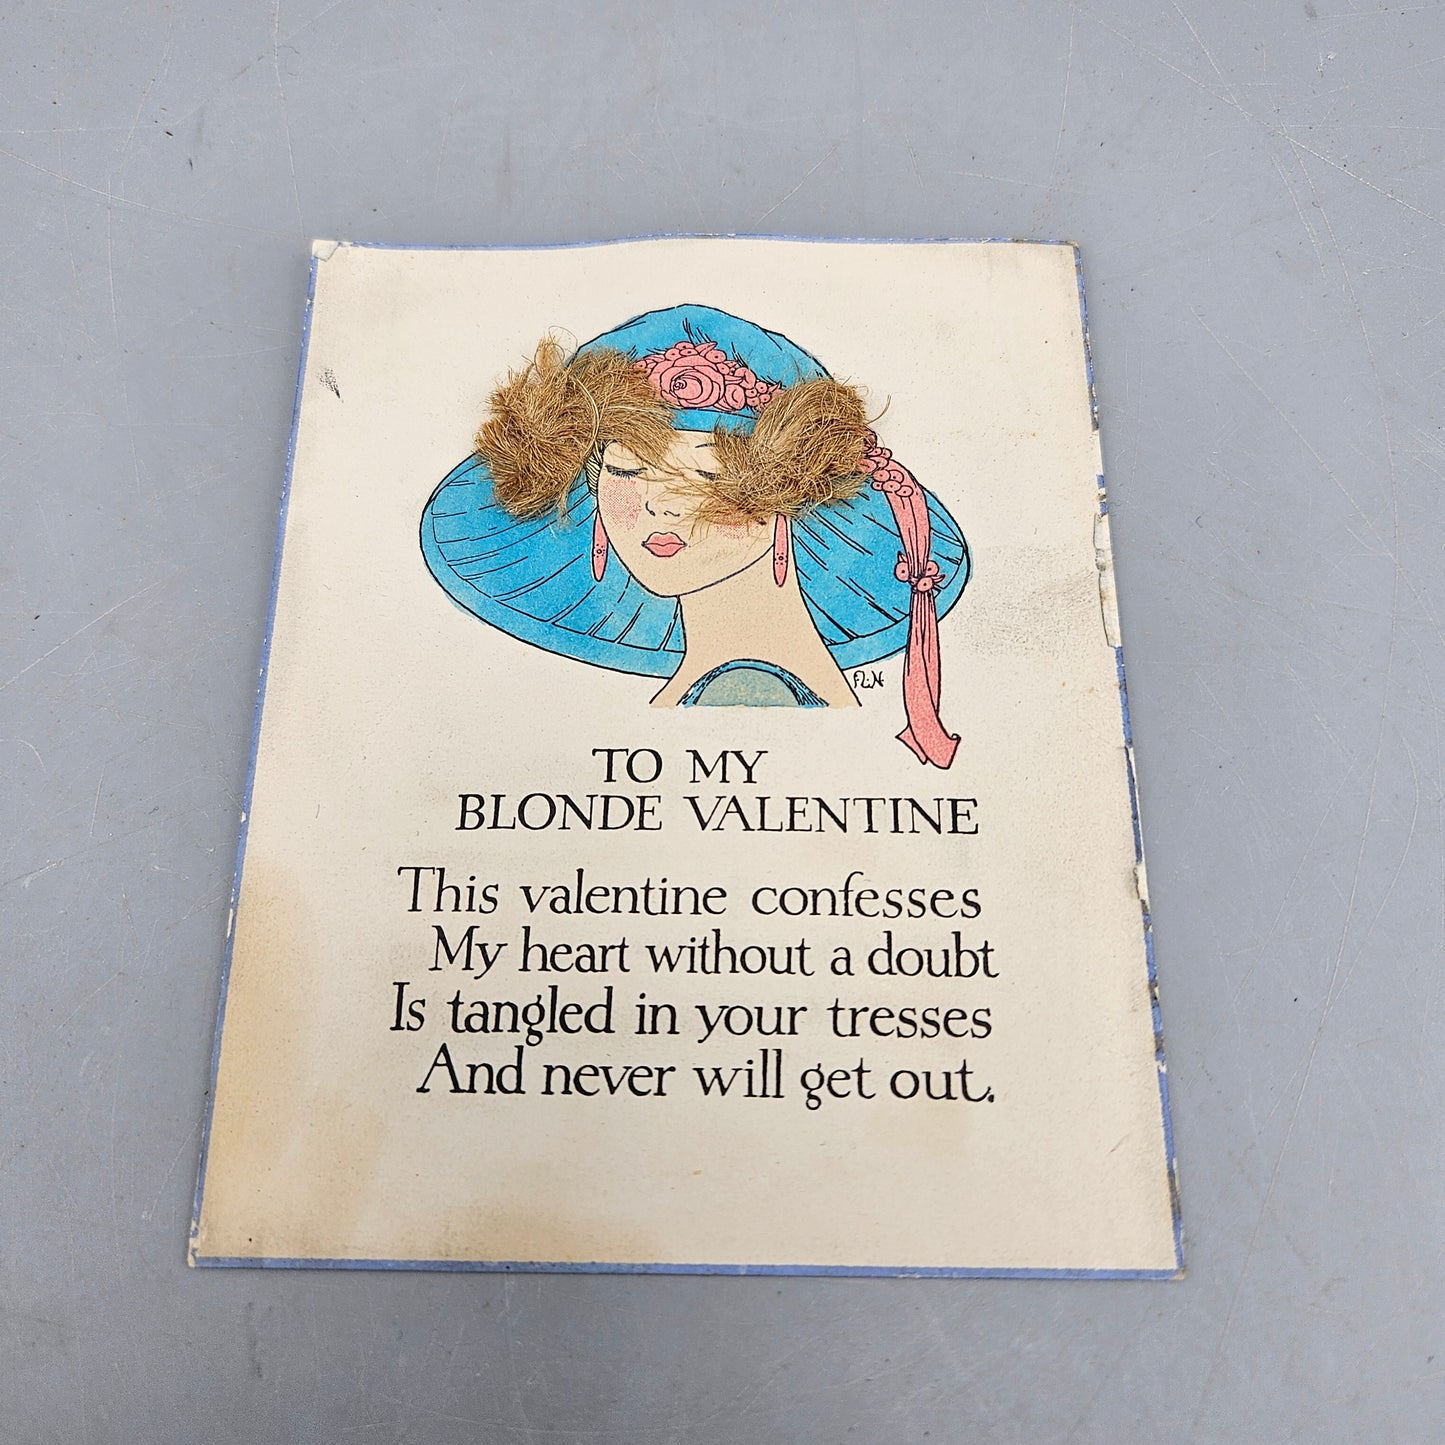 Adorable Vintage Valentine Card "To My Blonde Valentine"